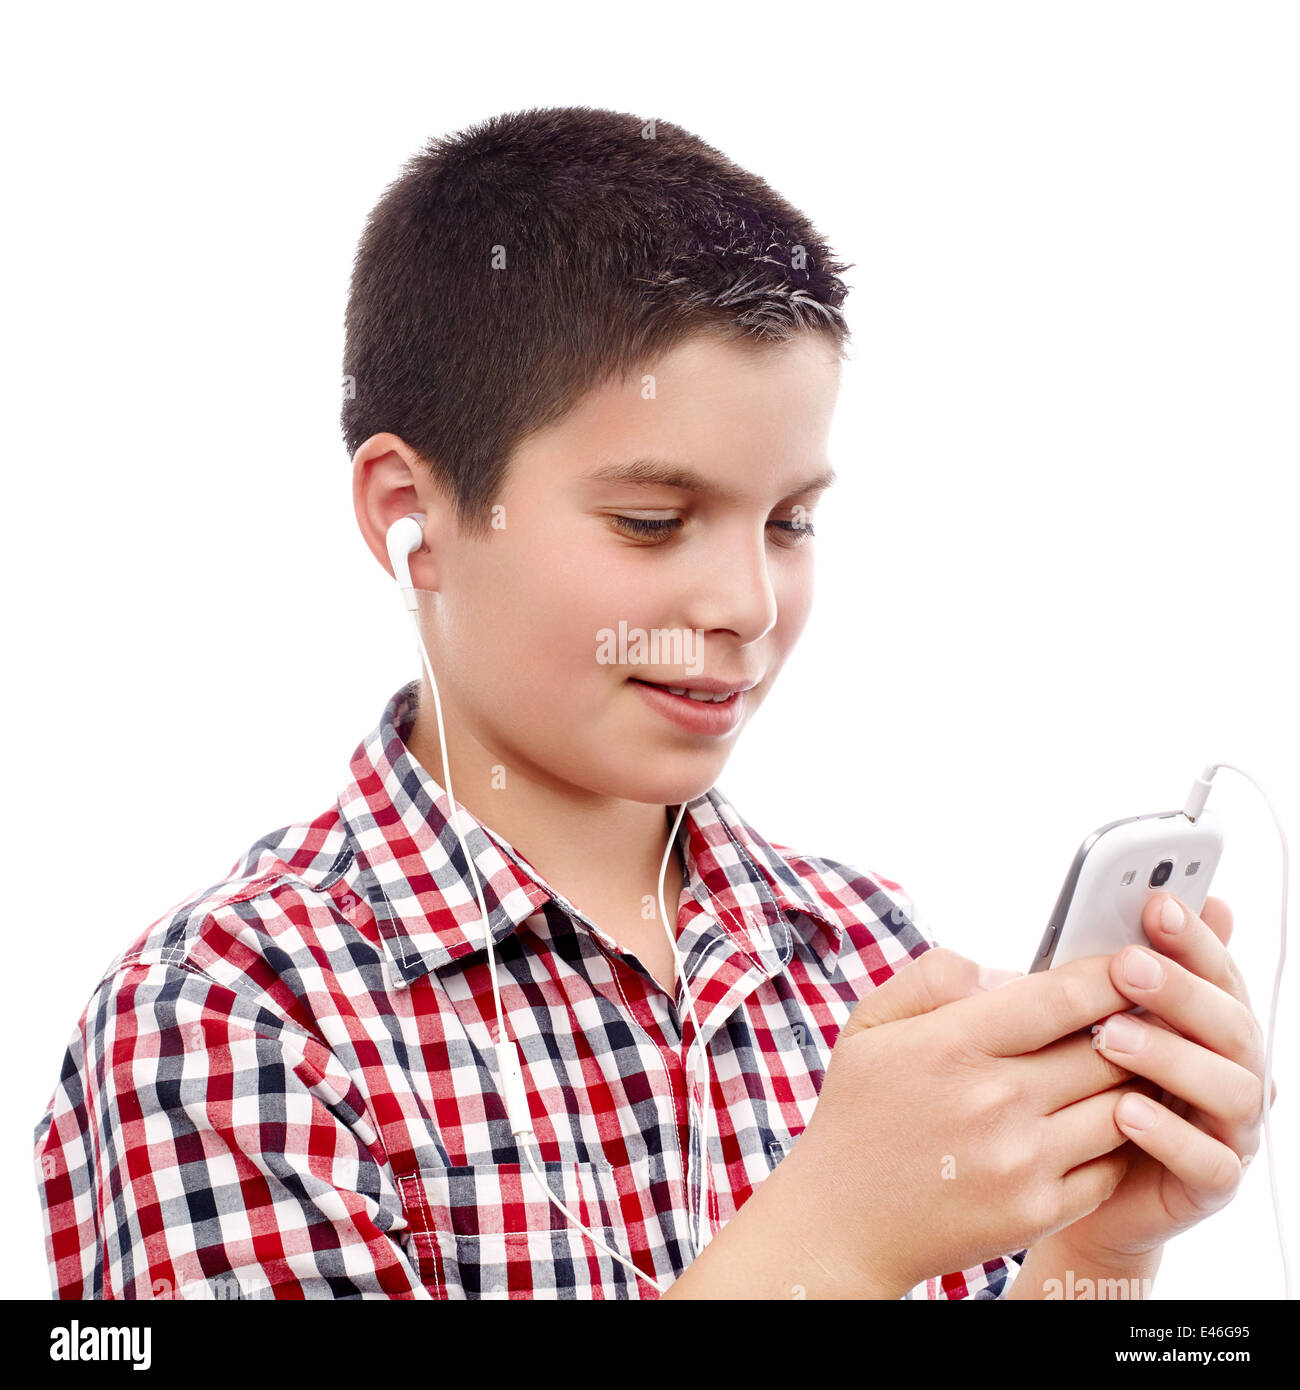 Jeune garçon cherchant quelque chose sur un téléphone intelligent Banque D'Images